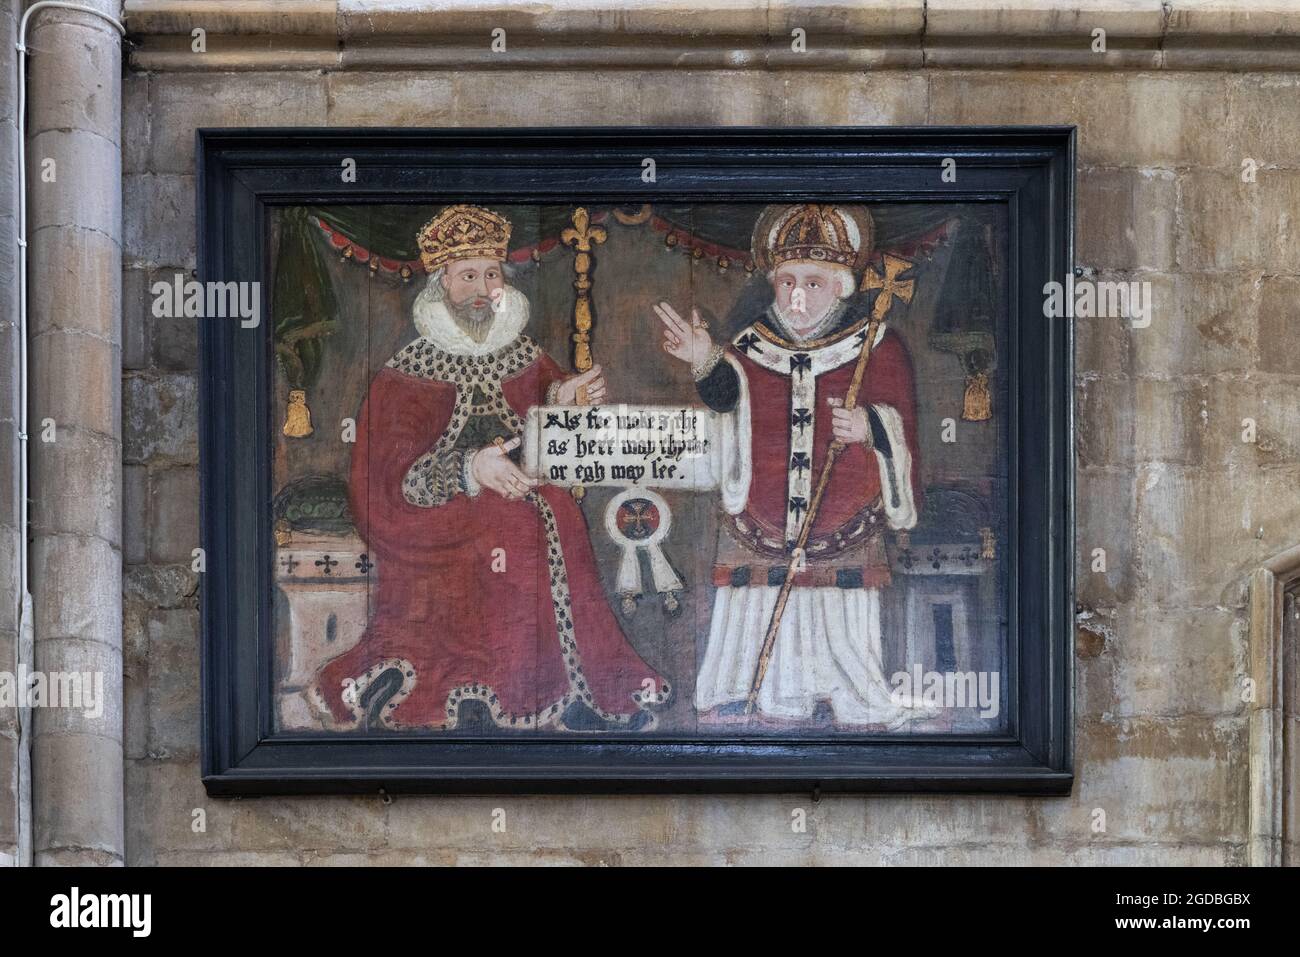 Peinture médiévale; - une peinture du XVIe siècle du roi Athelstan et de St Jean de Beverley; sur le mur à Beverley Minster, Beverley Yorkshire UK Banque D'Images